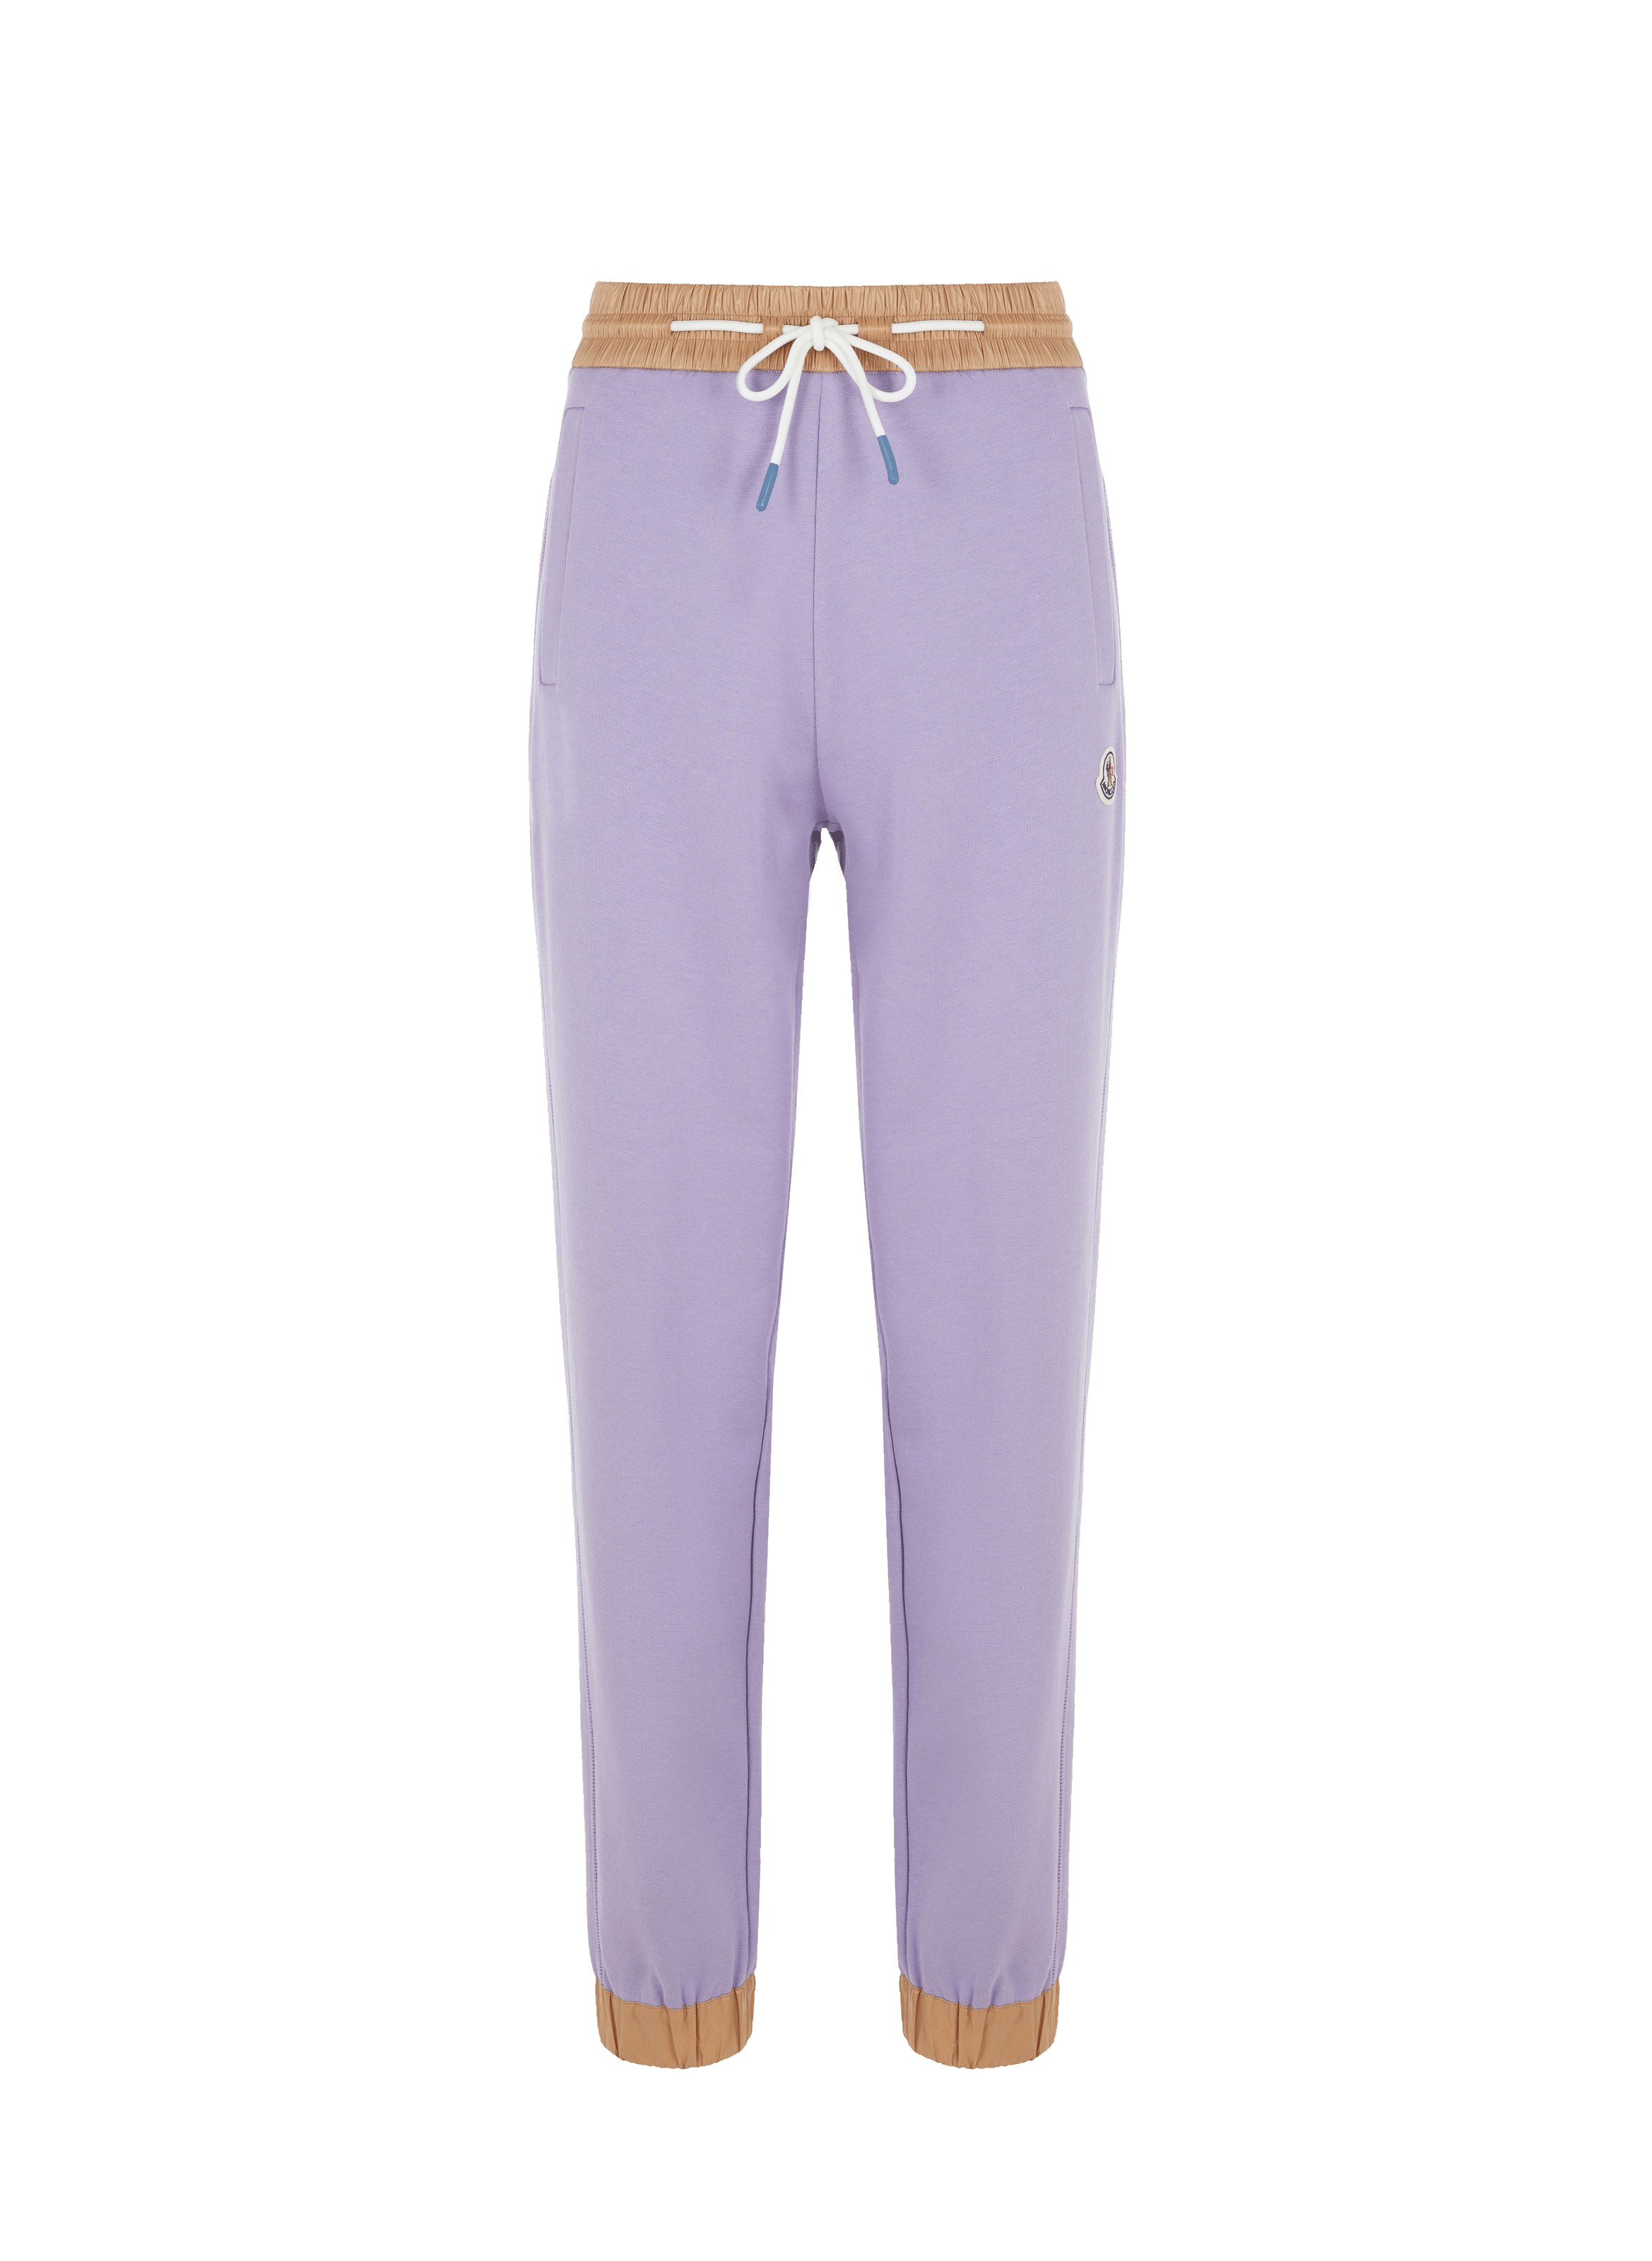 Pantalon de jogging en coton mélangé PurpleMONCLER 